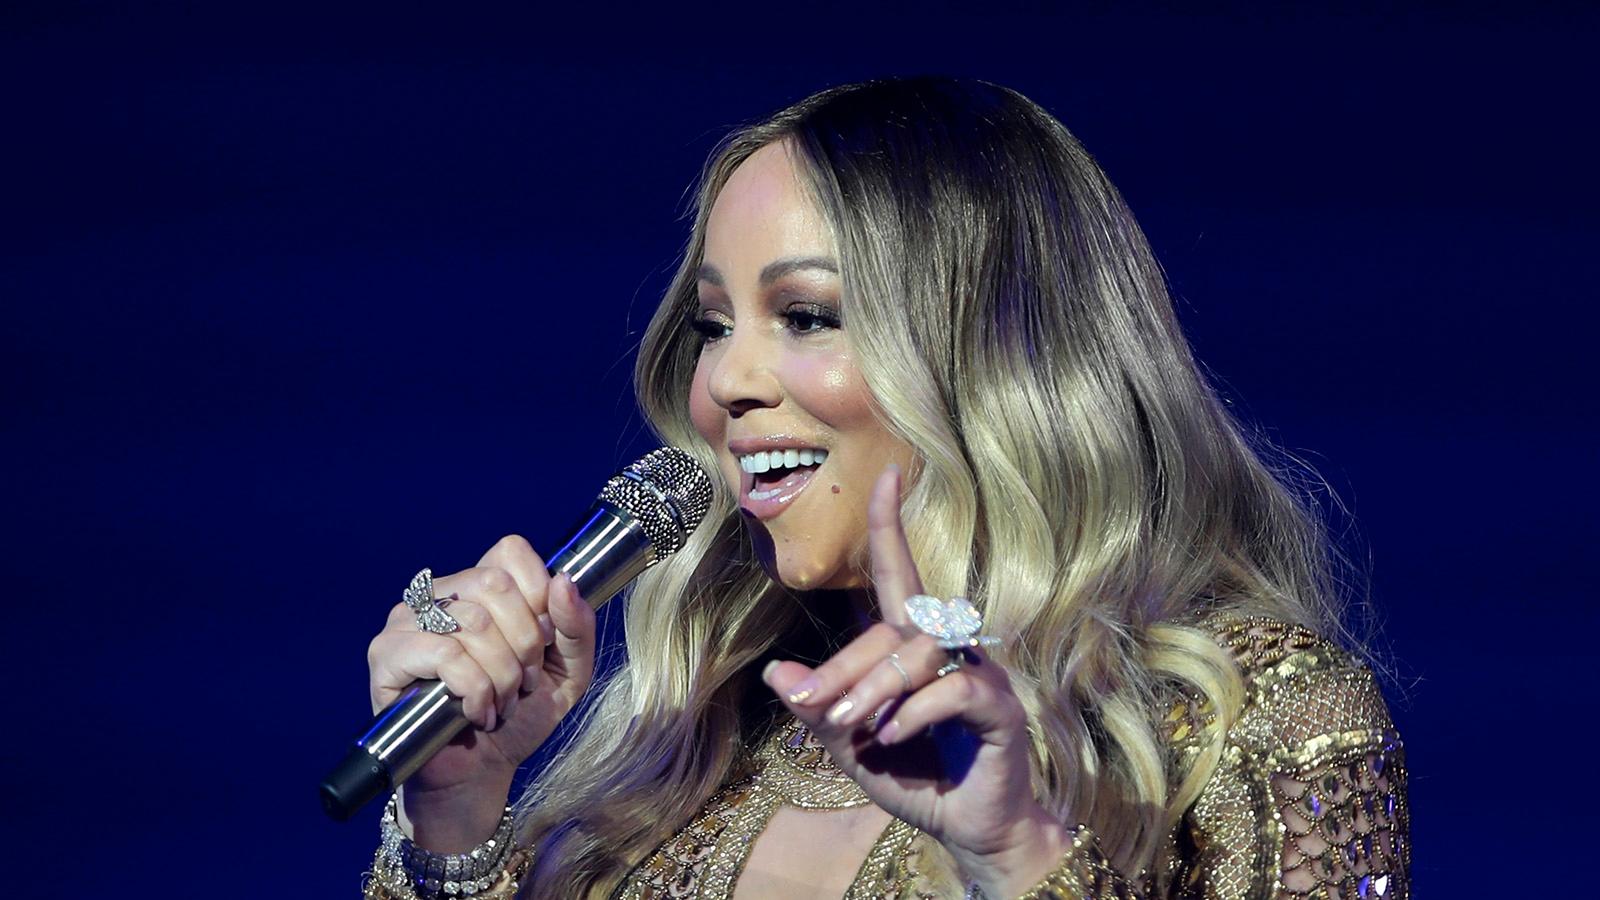 Mariah Careys låtar The roof” och ”My all” handlar om romansen med Derek Jeter.